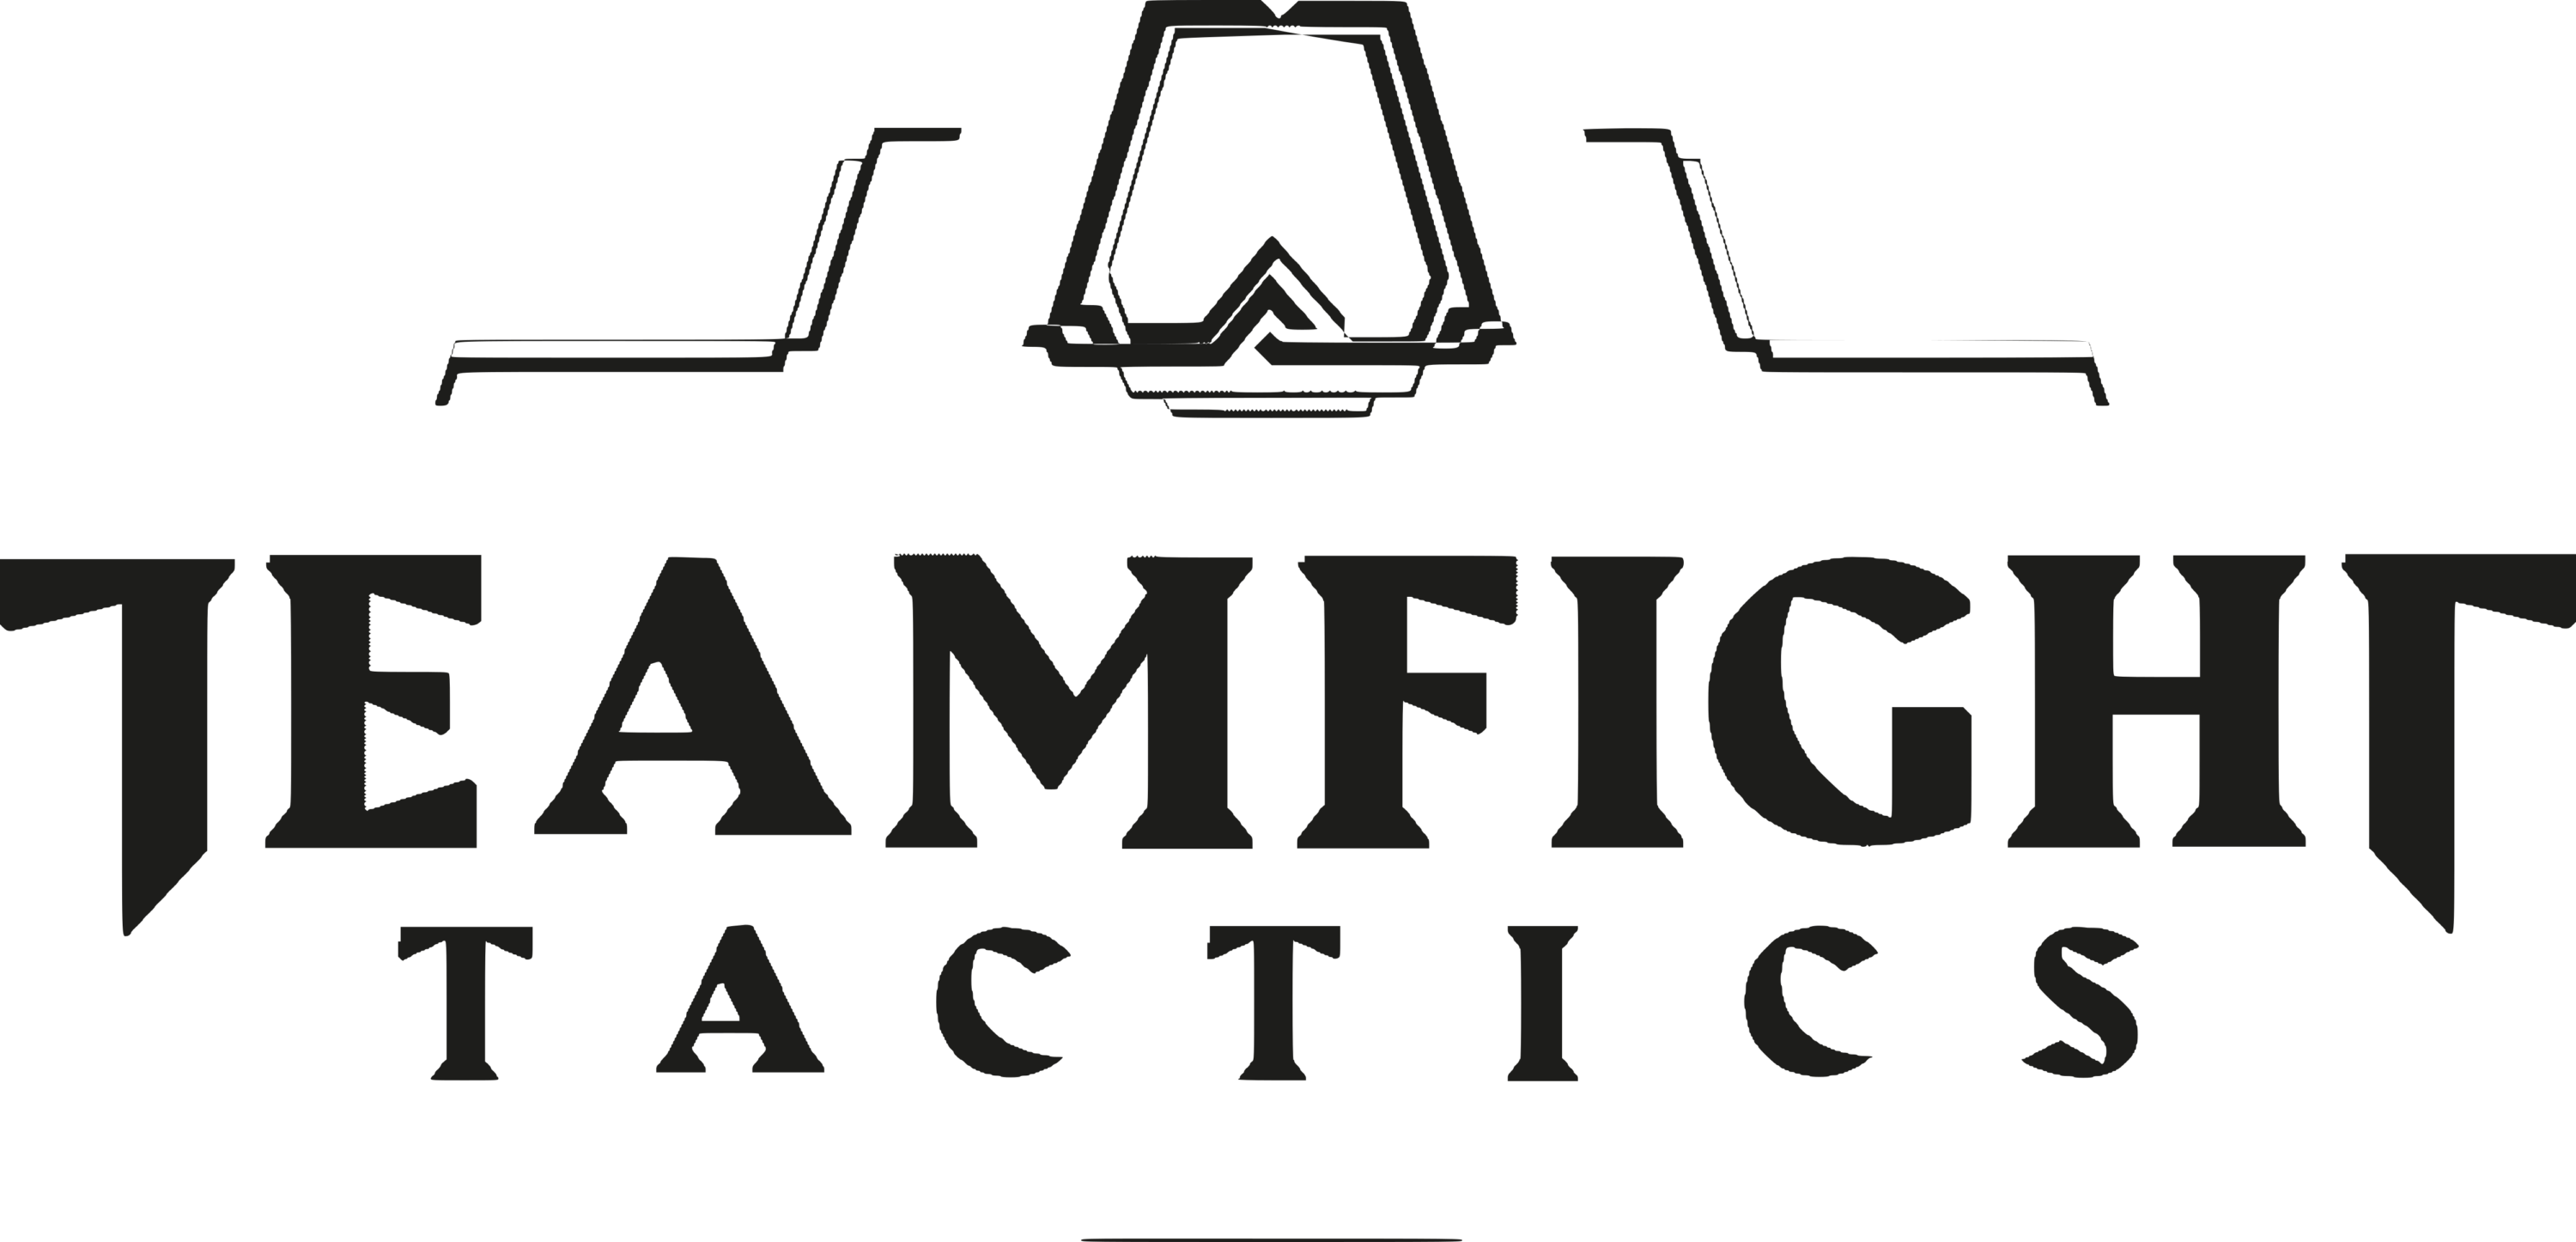 Teamfight Tactics Logo